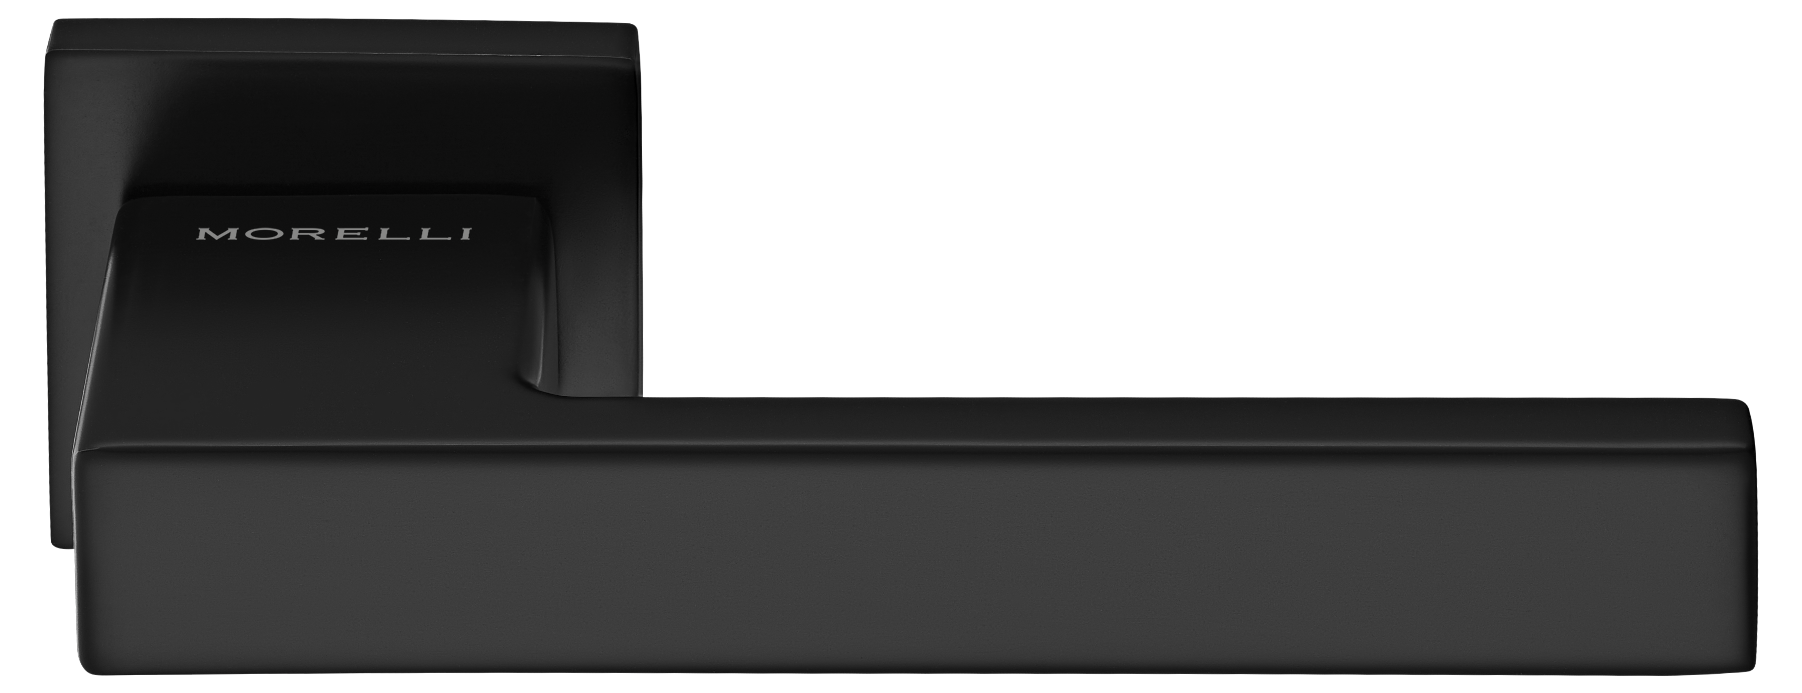 LOT ручка дверная на квадратной розетке 6 мм, MH-56-S6 BL, цвет - черный фото купить Махачкала